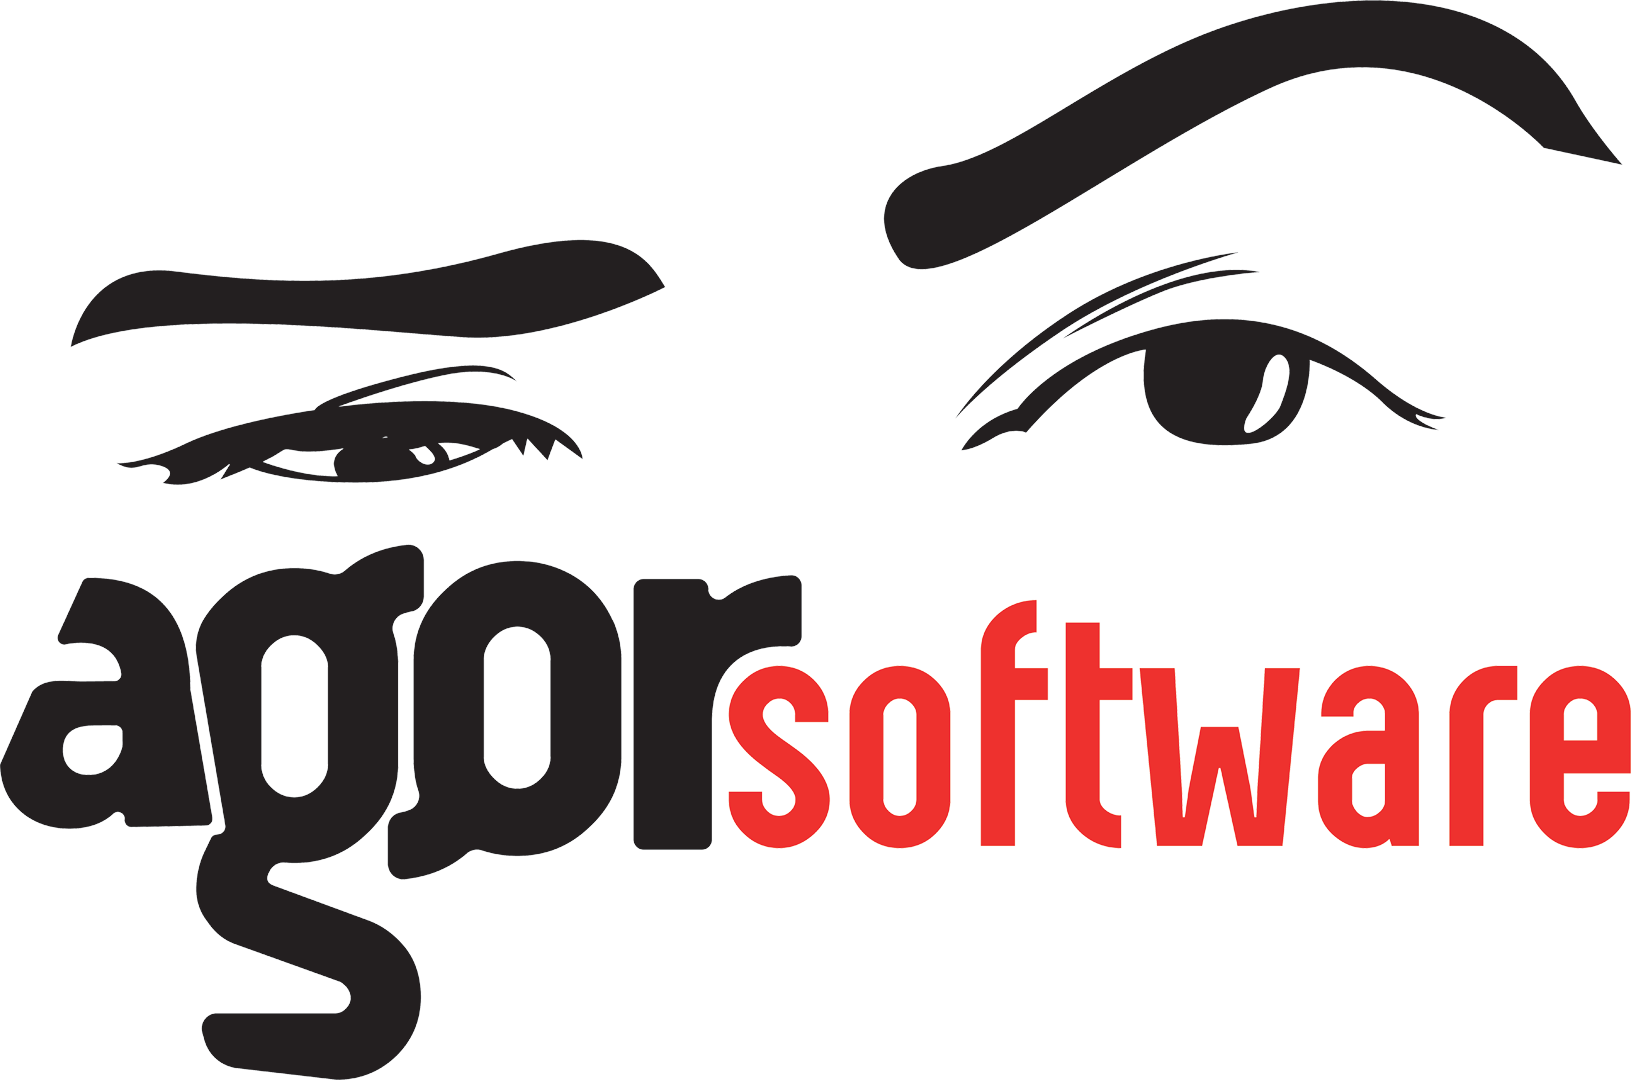 Agor Software